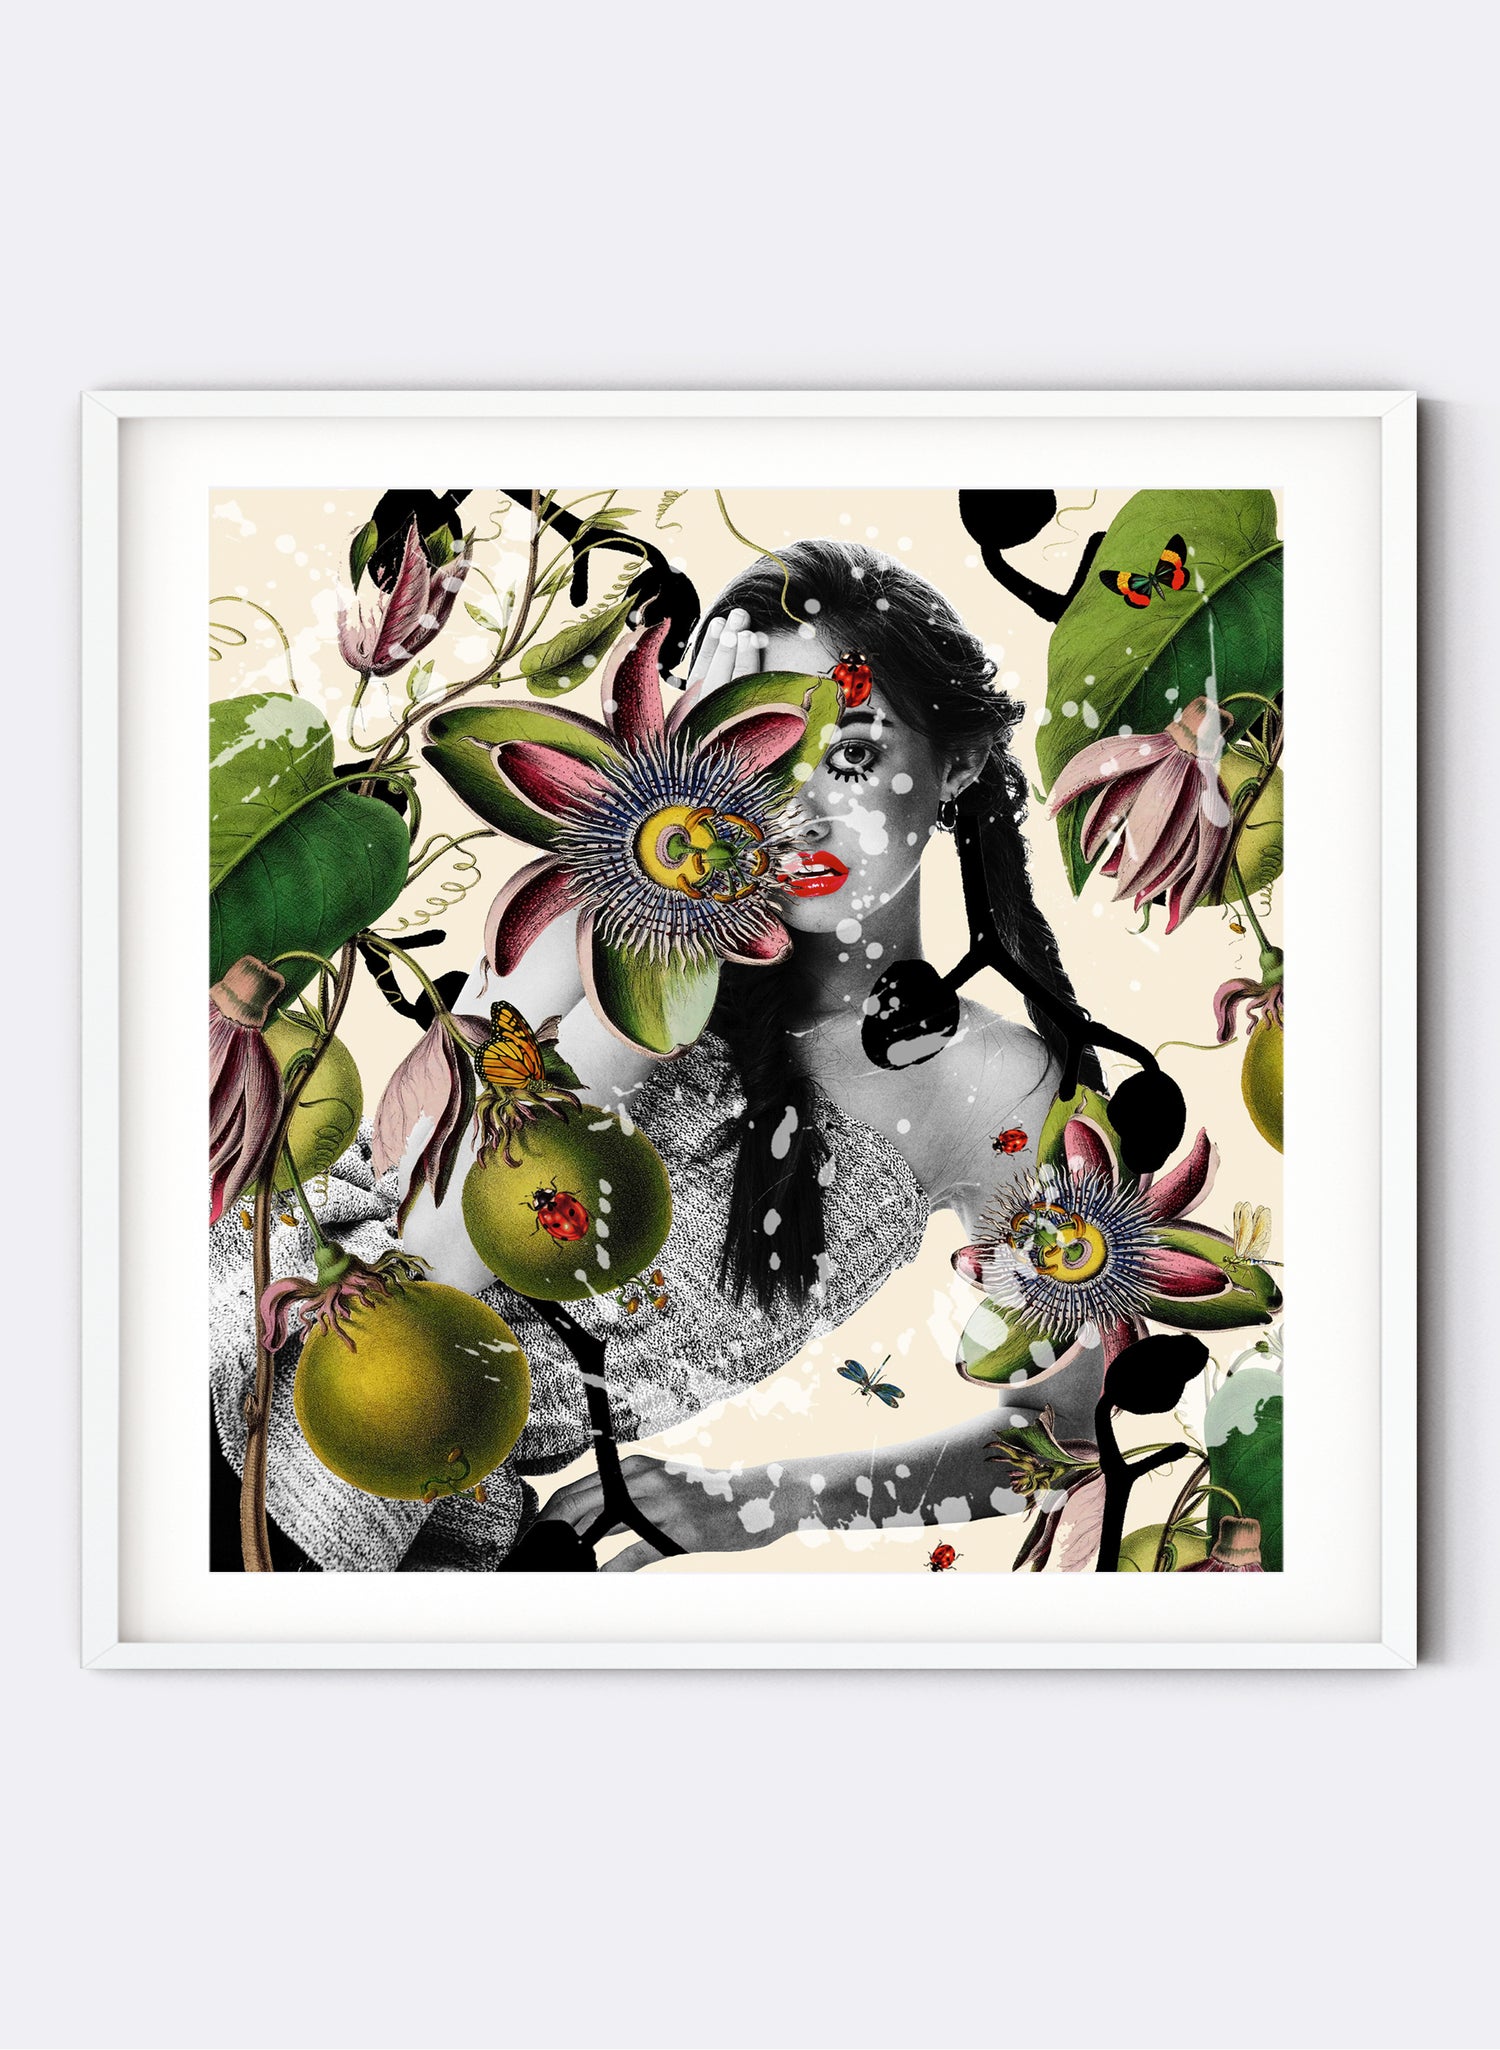 Eden - Digital Collage Print